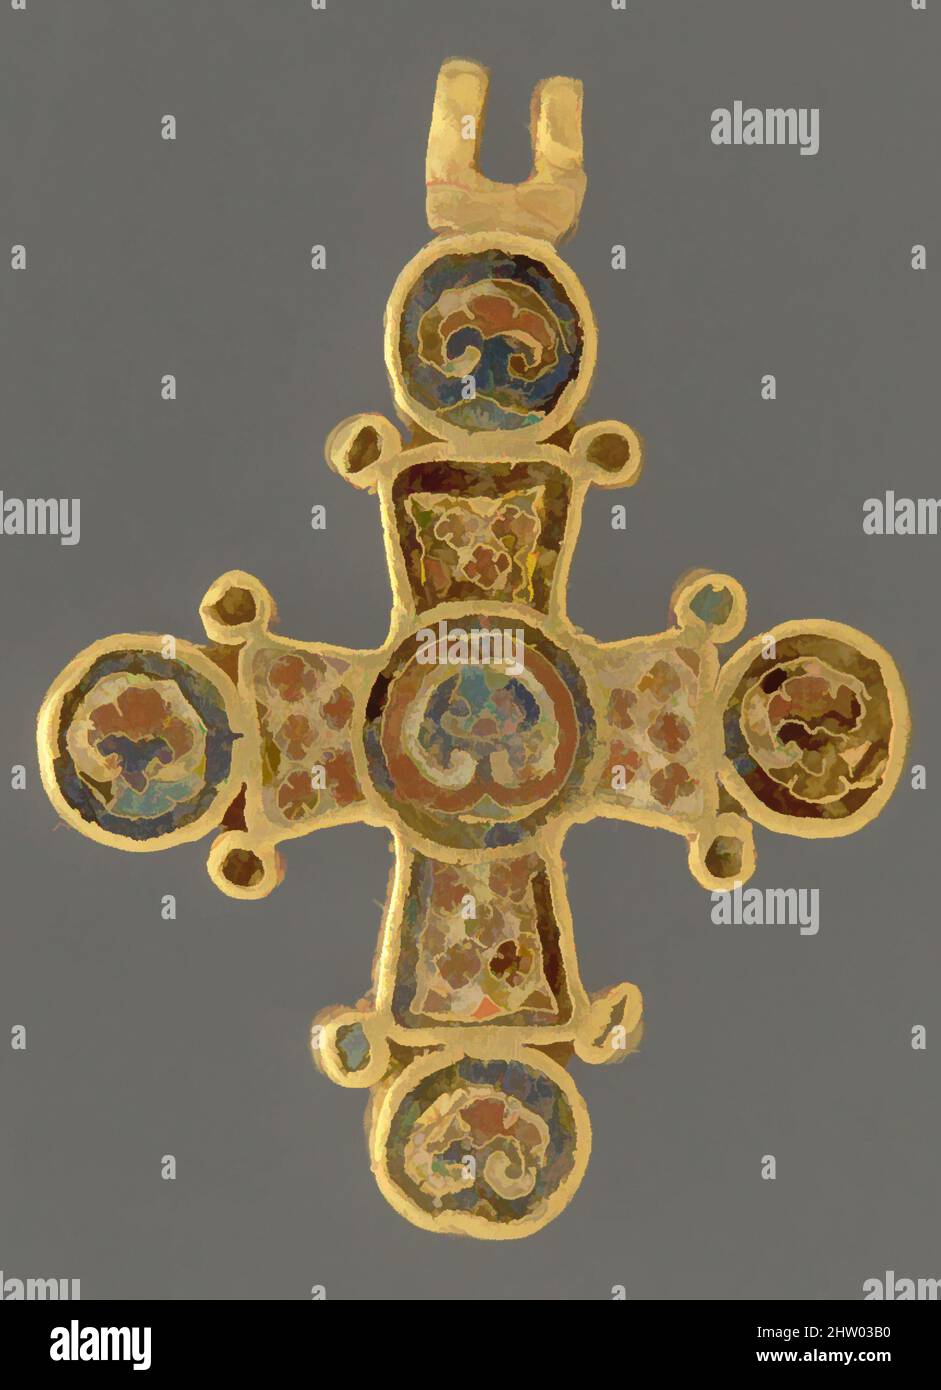 Kunst inspiriert von Cross, ca. 1100, hergestellt in Konstantinopel, byzantinisch, Cloisonne-Emaille (rot und blau), 15/16 x 7/8 x 1/8 Zoll (2,36 x 2,07 x 0,31 cm), Enamels-Cloisonné, Dieses elegante Hängekreuz steht stellvertretend für die feinsten Objekte für persönliche Hingabe, die für die Elite der von Artotop modernisierten Classic Works mit einem Schuss Moderne geschaffen wurden. Formen, Farbe und Wert, auffällige visuelle Wirkung auf Kunst. Emotionen durch Freiheit von Kunstwerken auf zeitgemäße Weise. Eine zeitlose Botschaft, die eine wild kreative neue Richtung verfolgt. Künstler, die sich dem digitalen Medium zuwenden und die Artotop NFT erschaffen Stockfoto